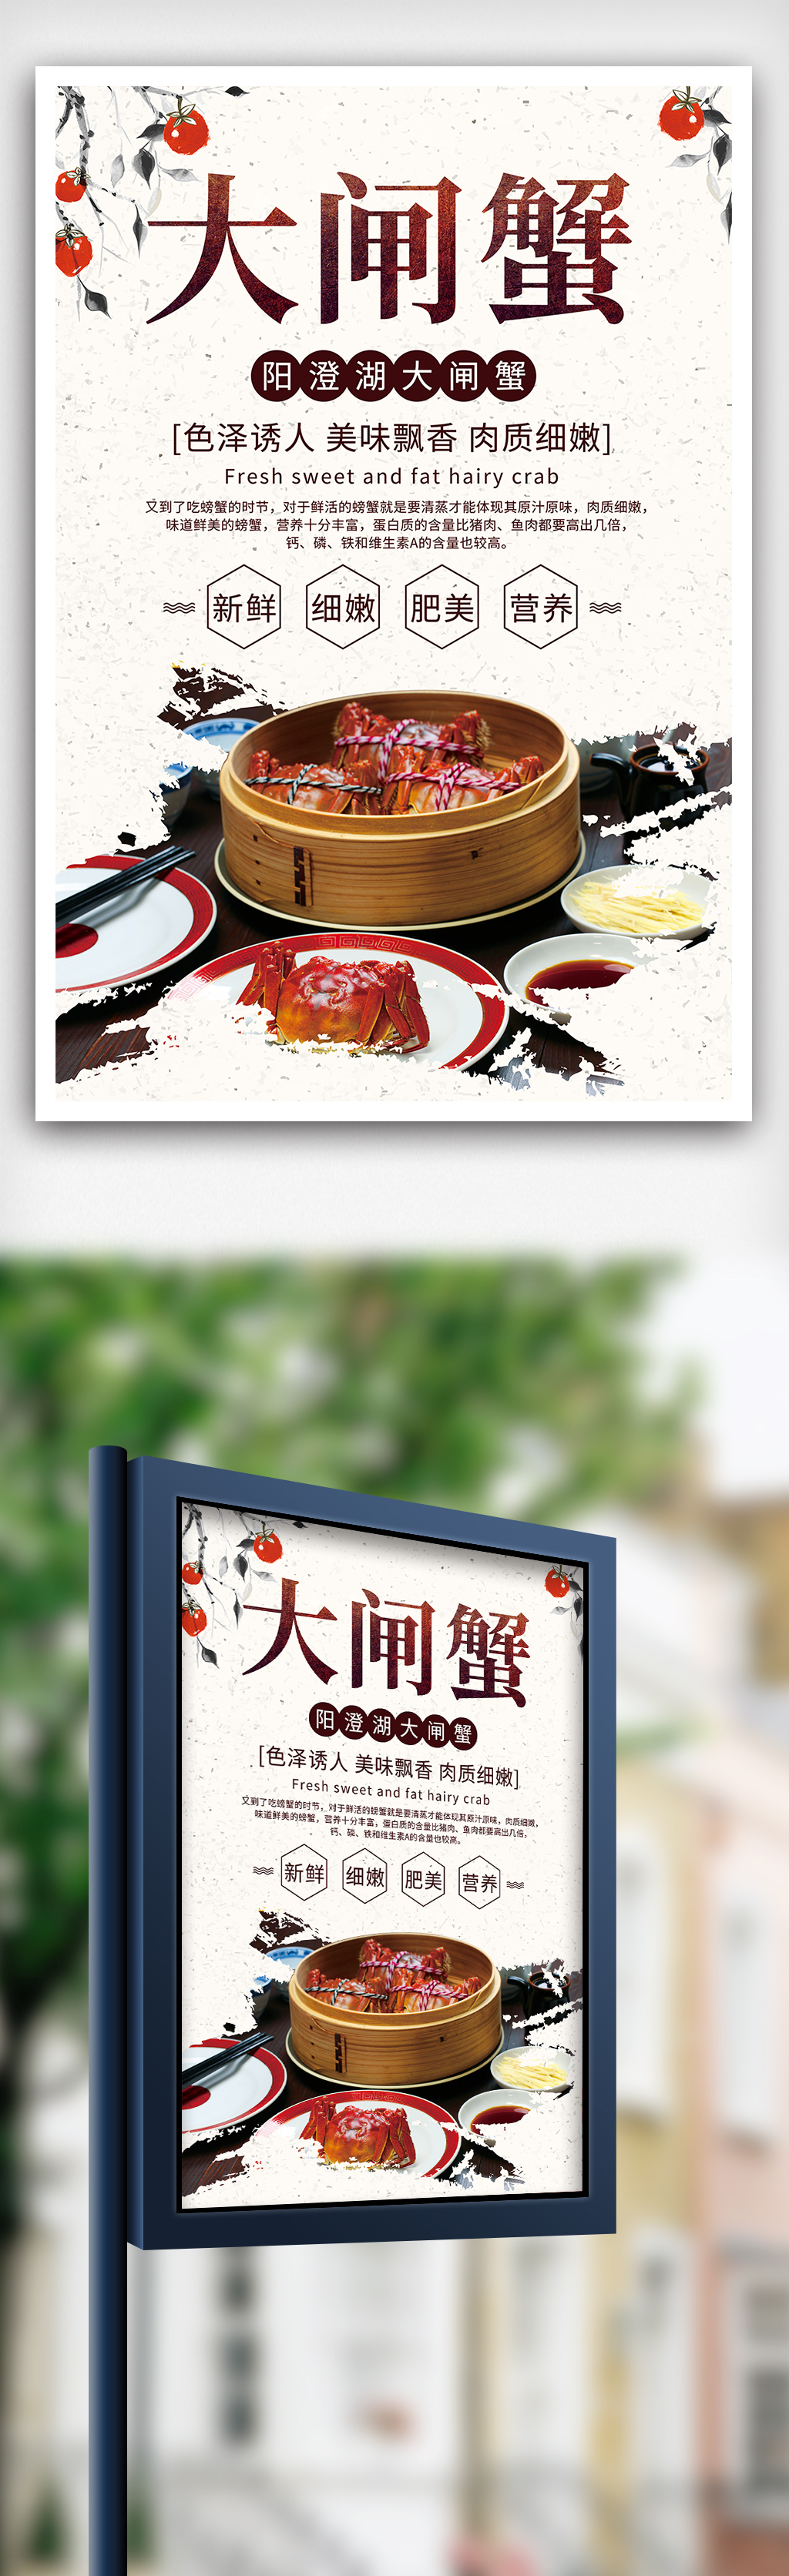 中国风背景大闸蟹促销海报设计图片